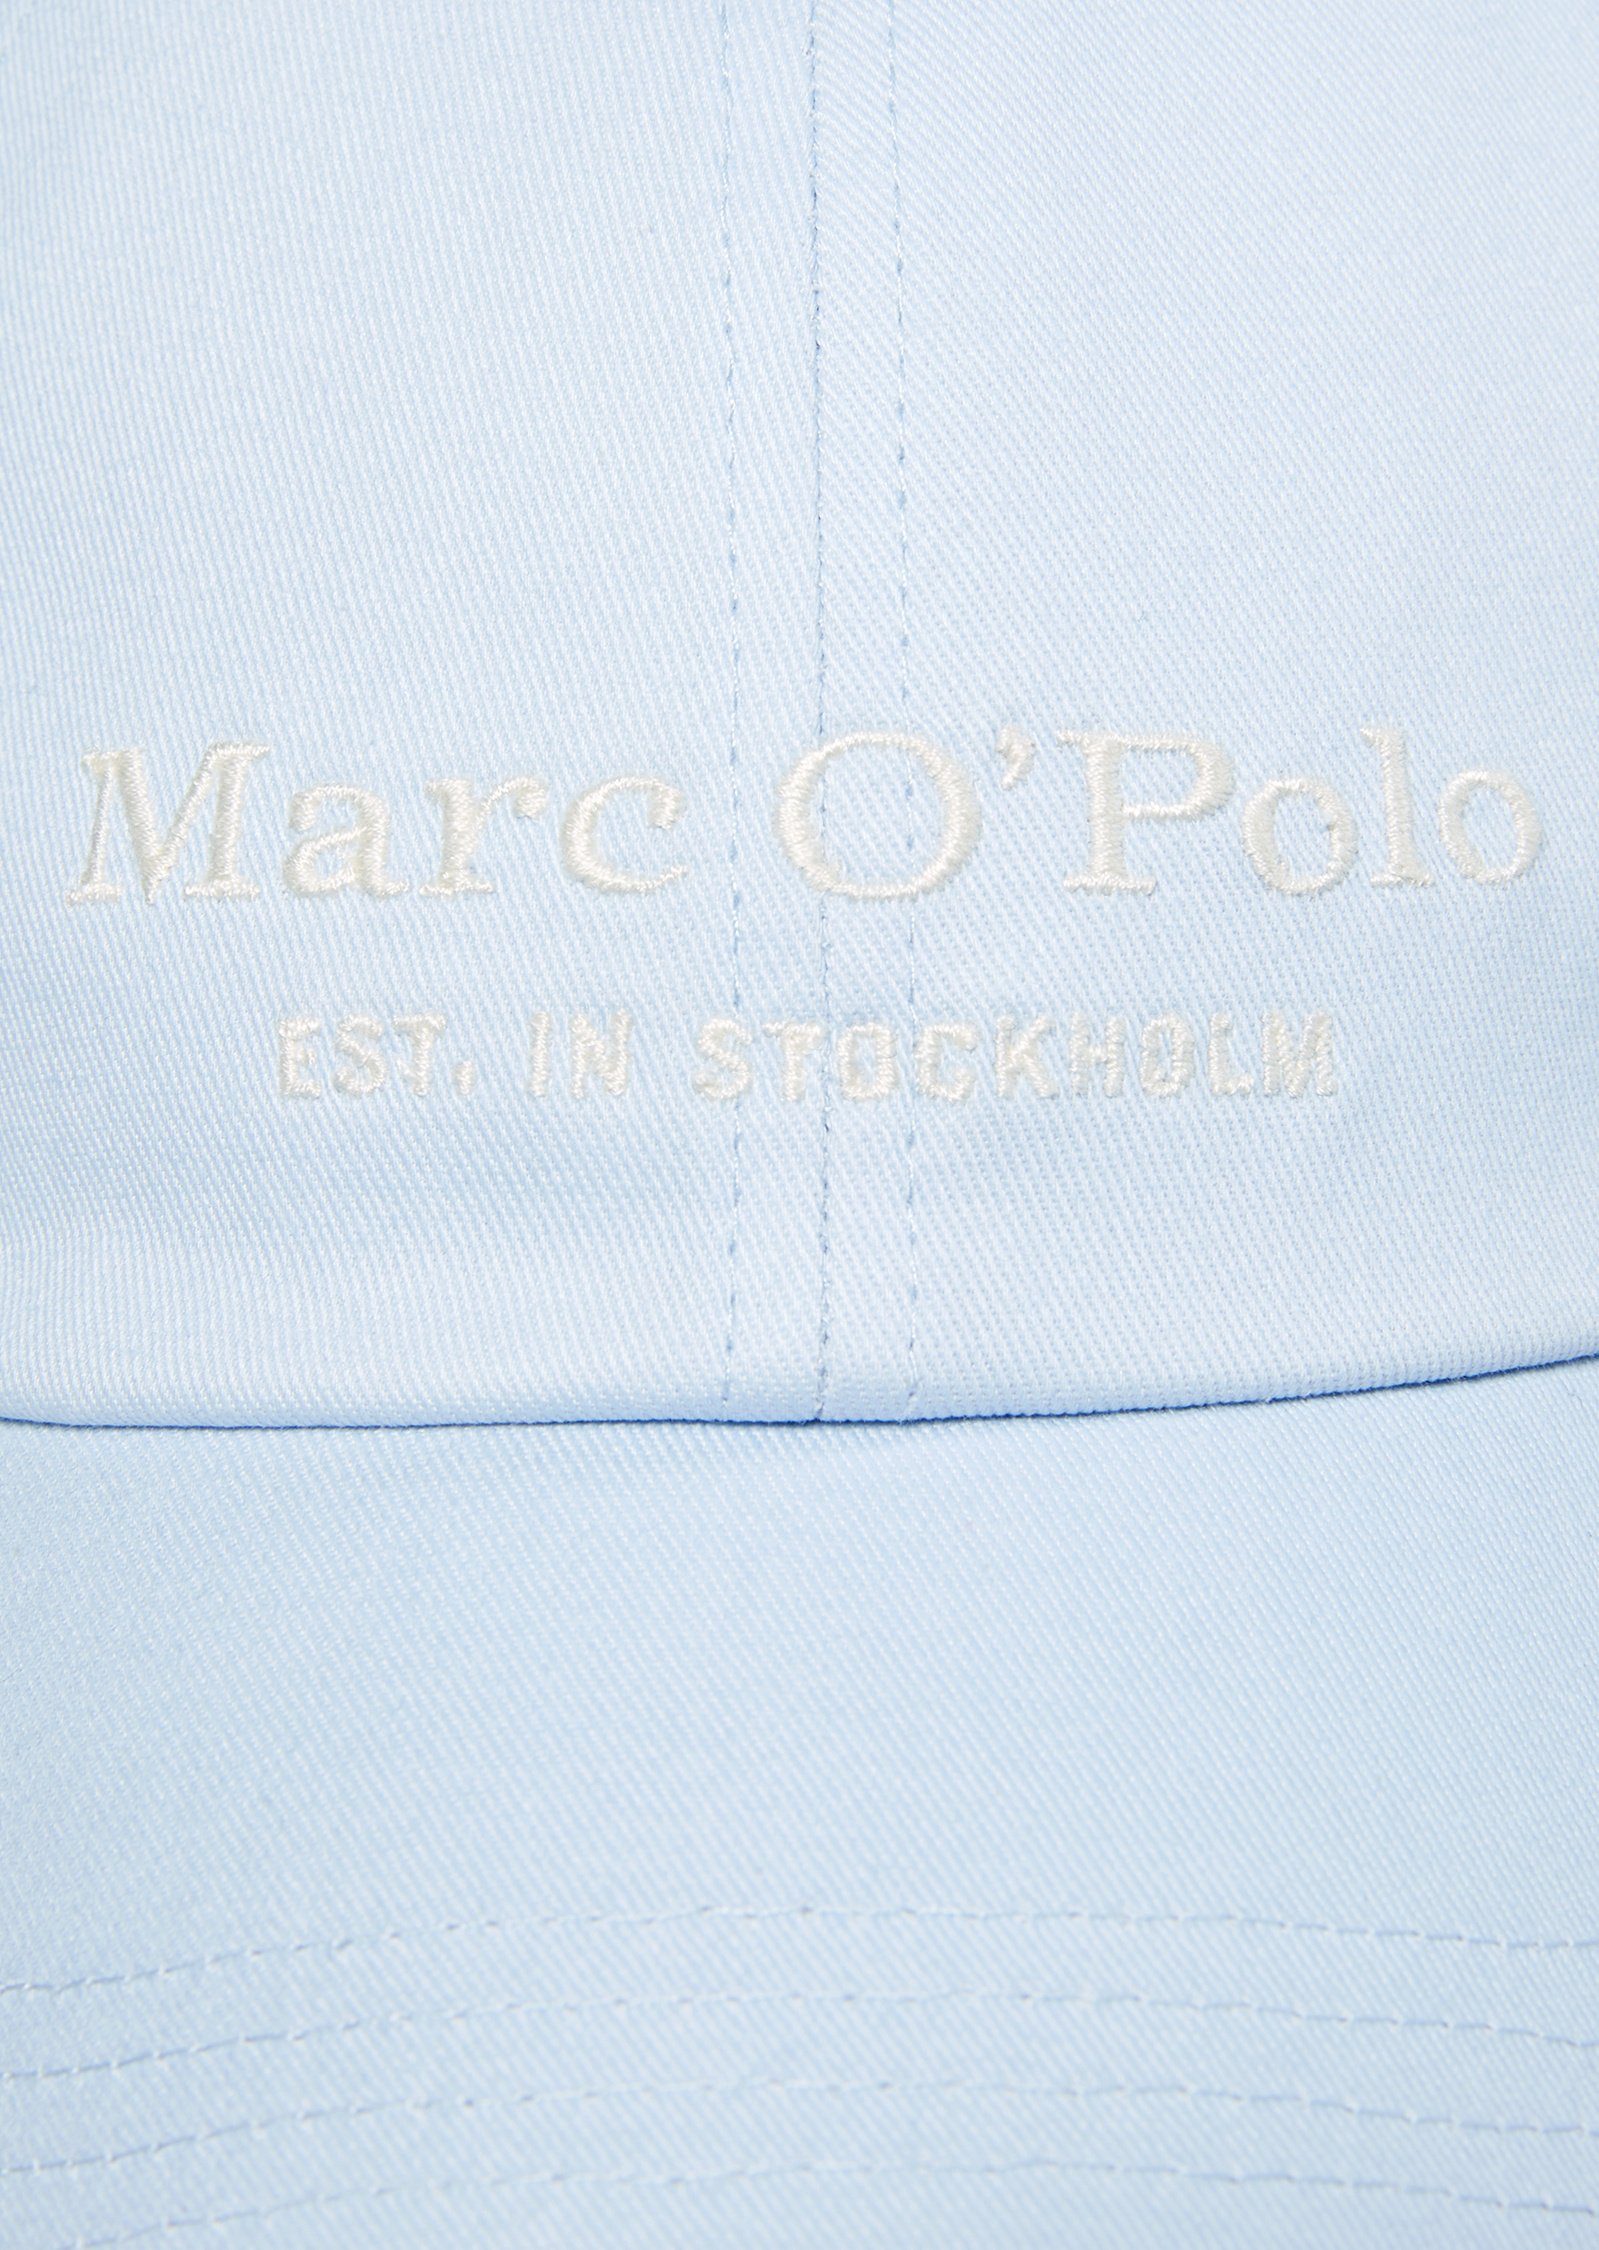 O'Polo Marc aus Baseball Cap Organic-Twill hochwertigem blau